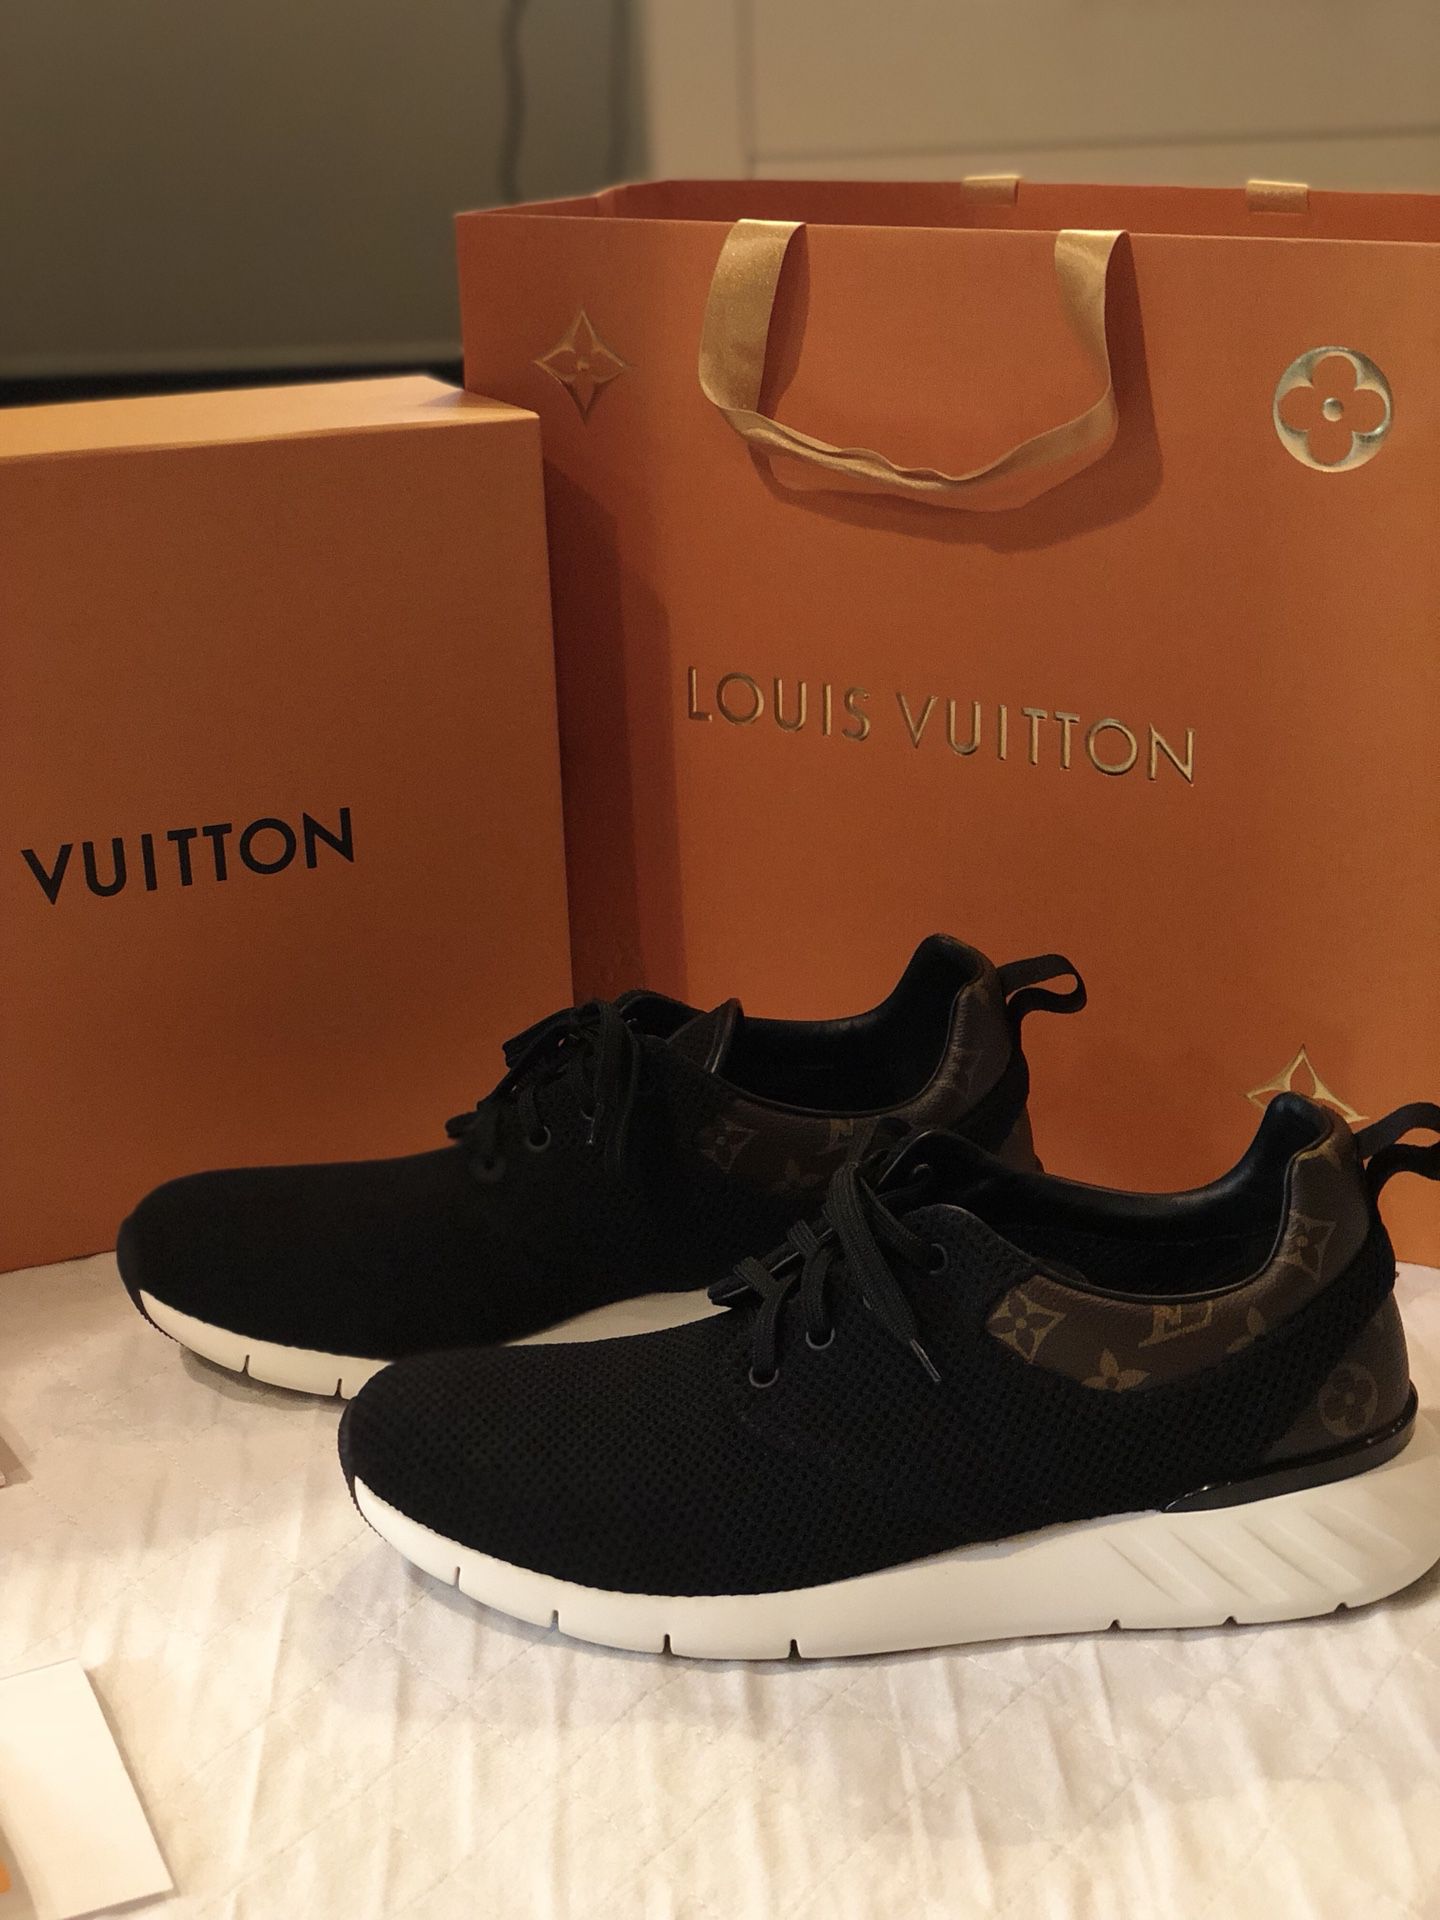 Louis Vuitton Men's Fastlane Sneaker